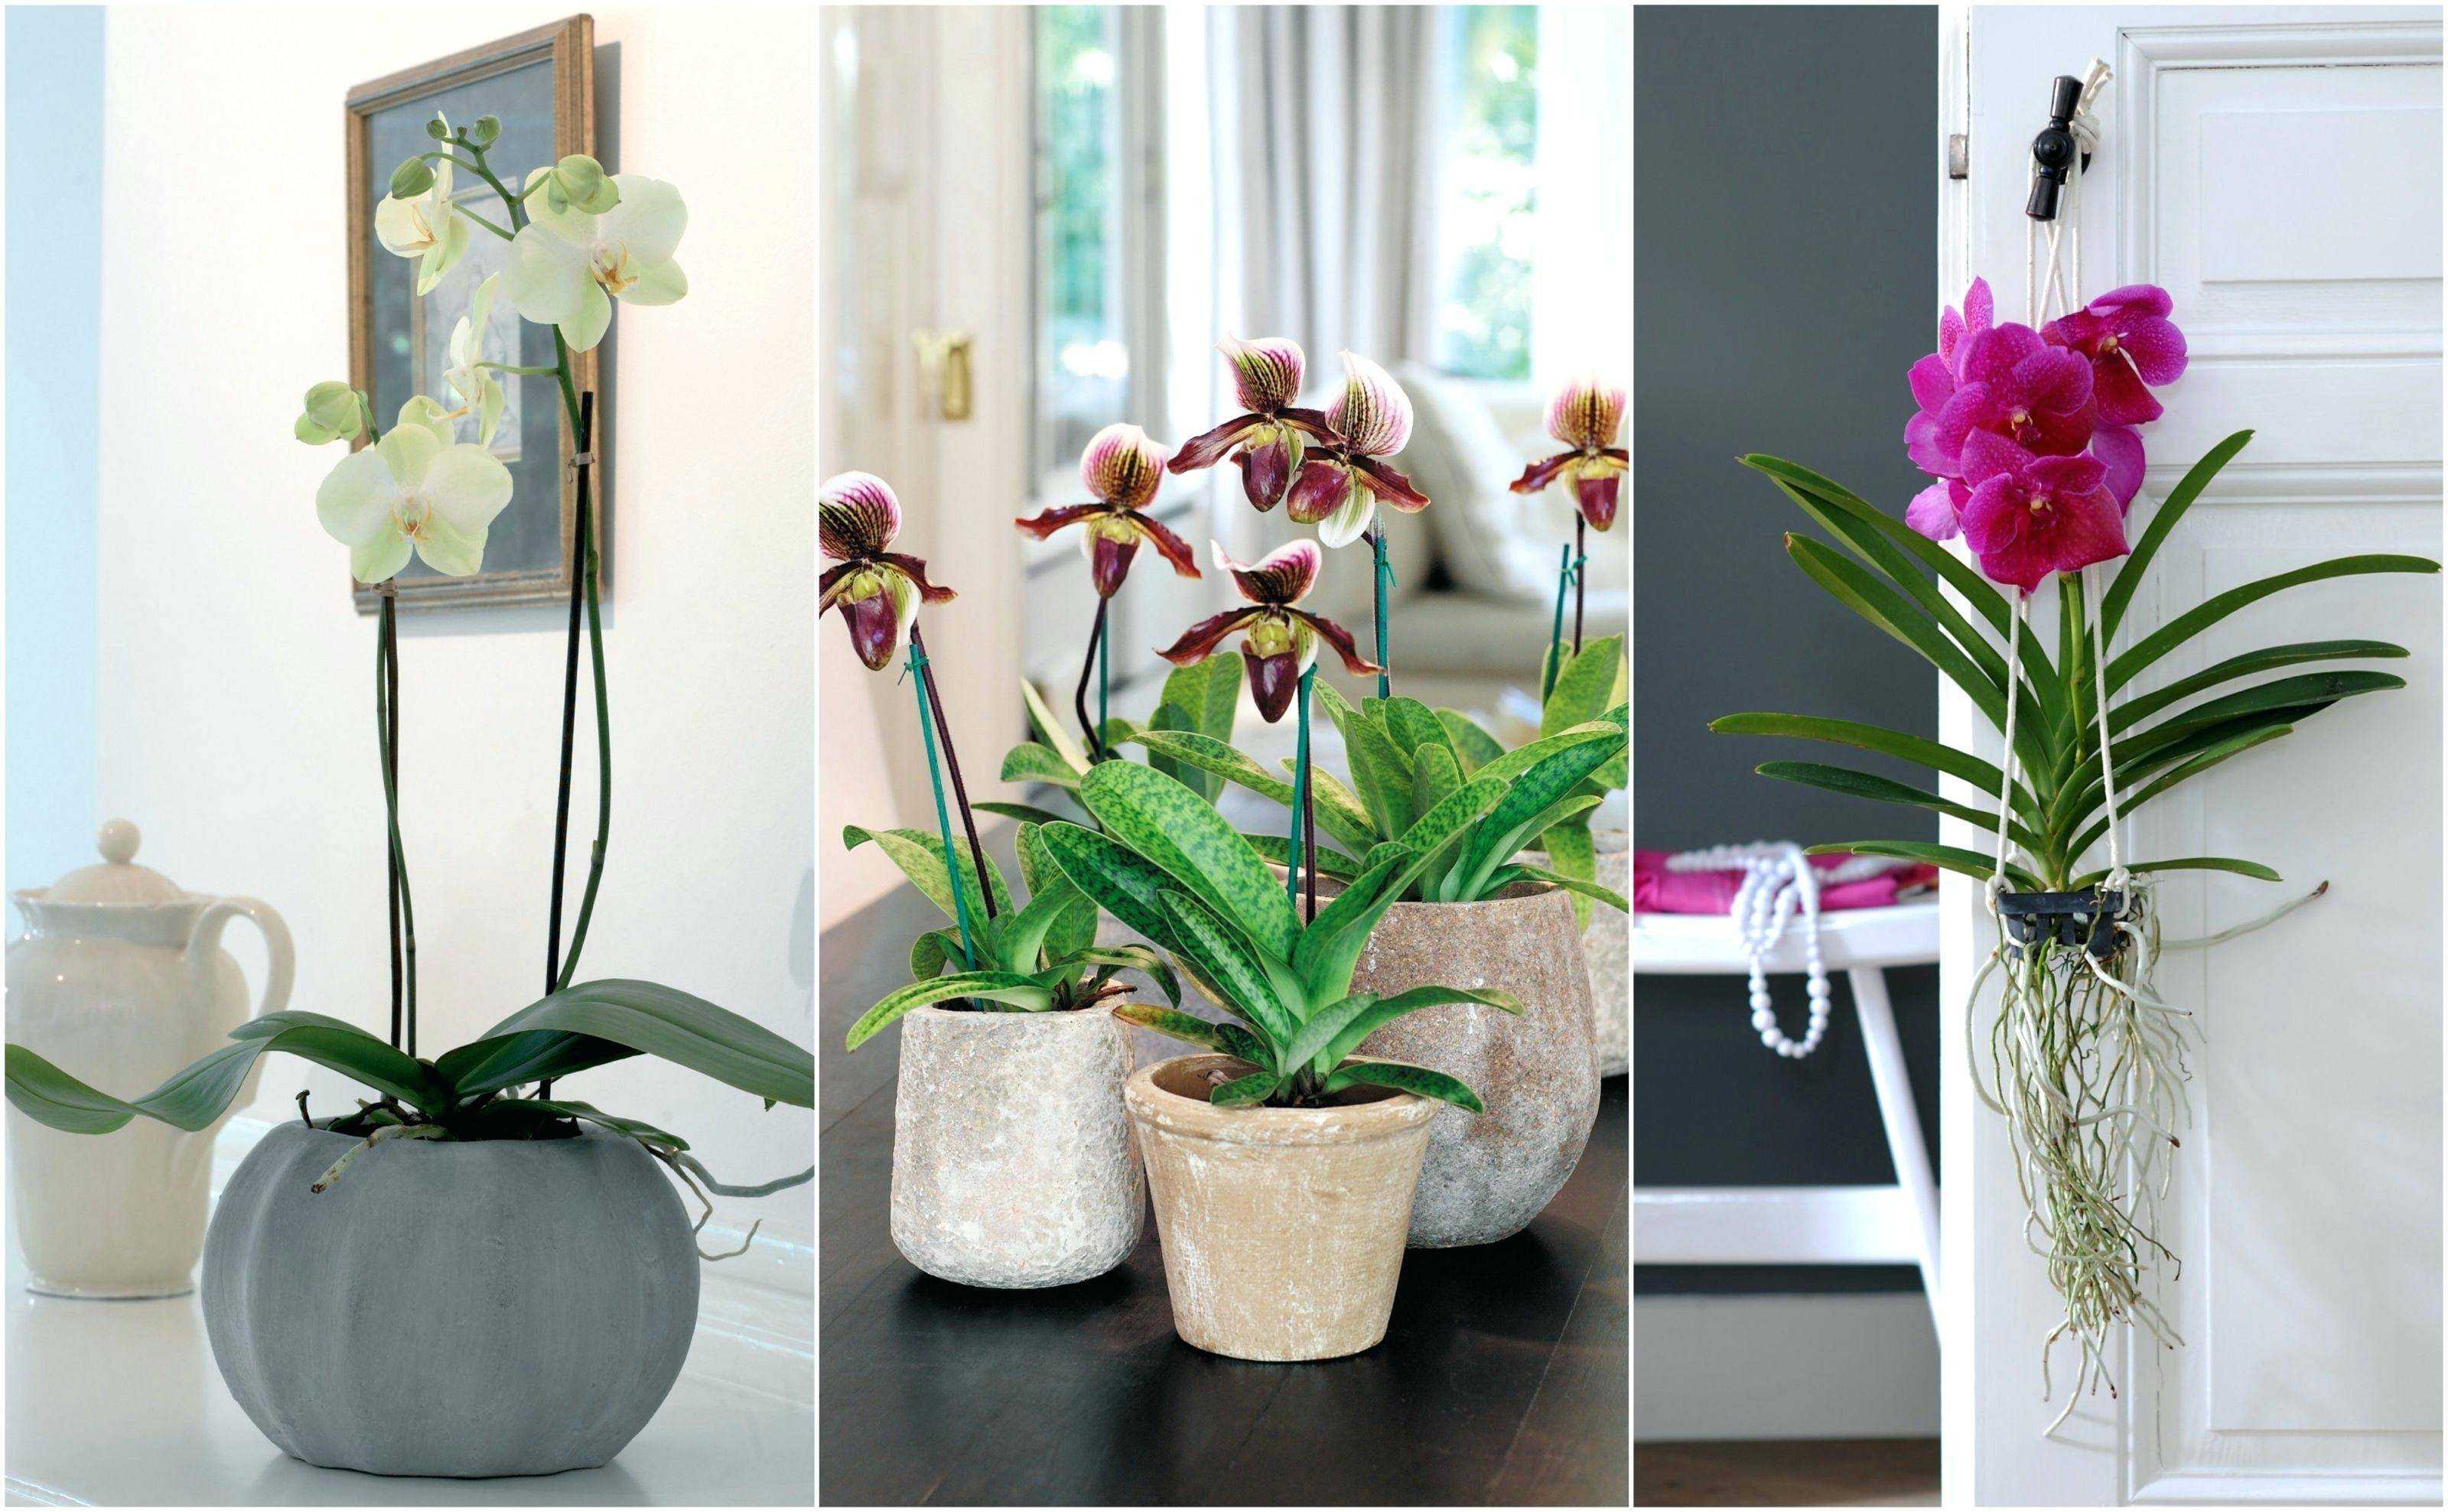 Болезни орхидей и их лечение, фото, описание в домашних условиях: пятна на цветах в горшке, сажистый грибок, плесень, появились черные точки, коричневая гниль корней